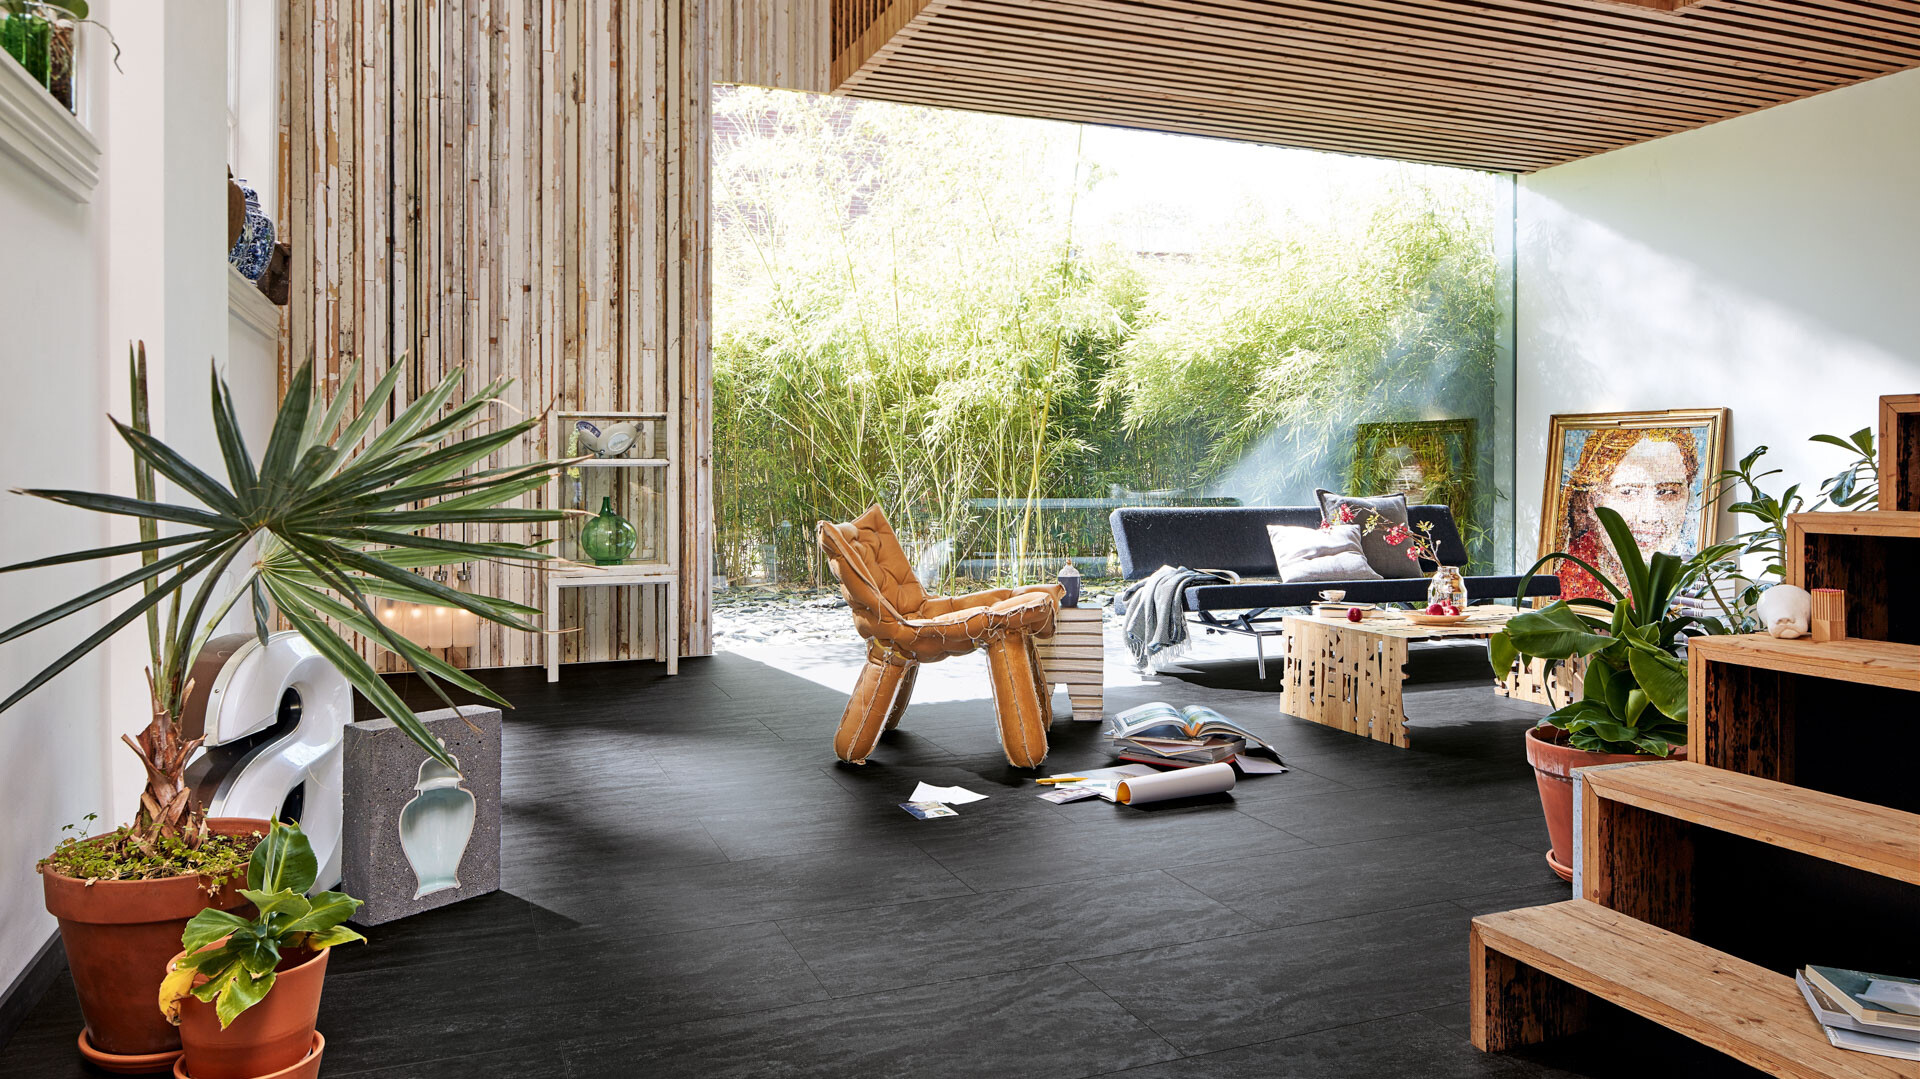 Schwarzer Designboden im Kontrast zu viel Holz und Grünpflanzen im Tropcial Style